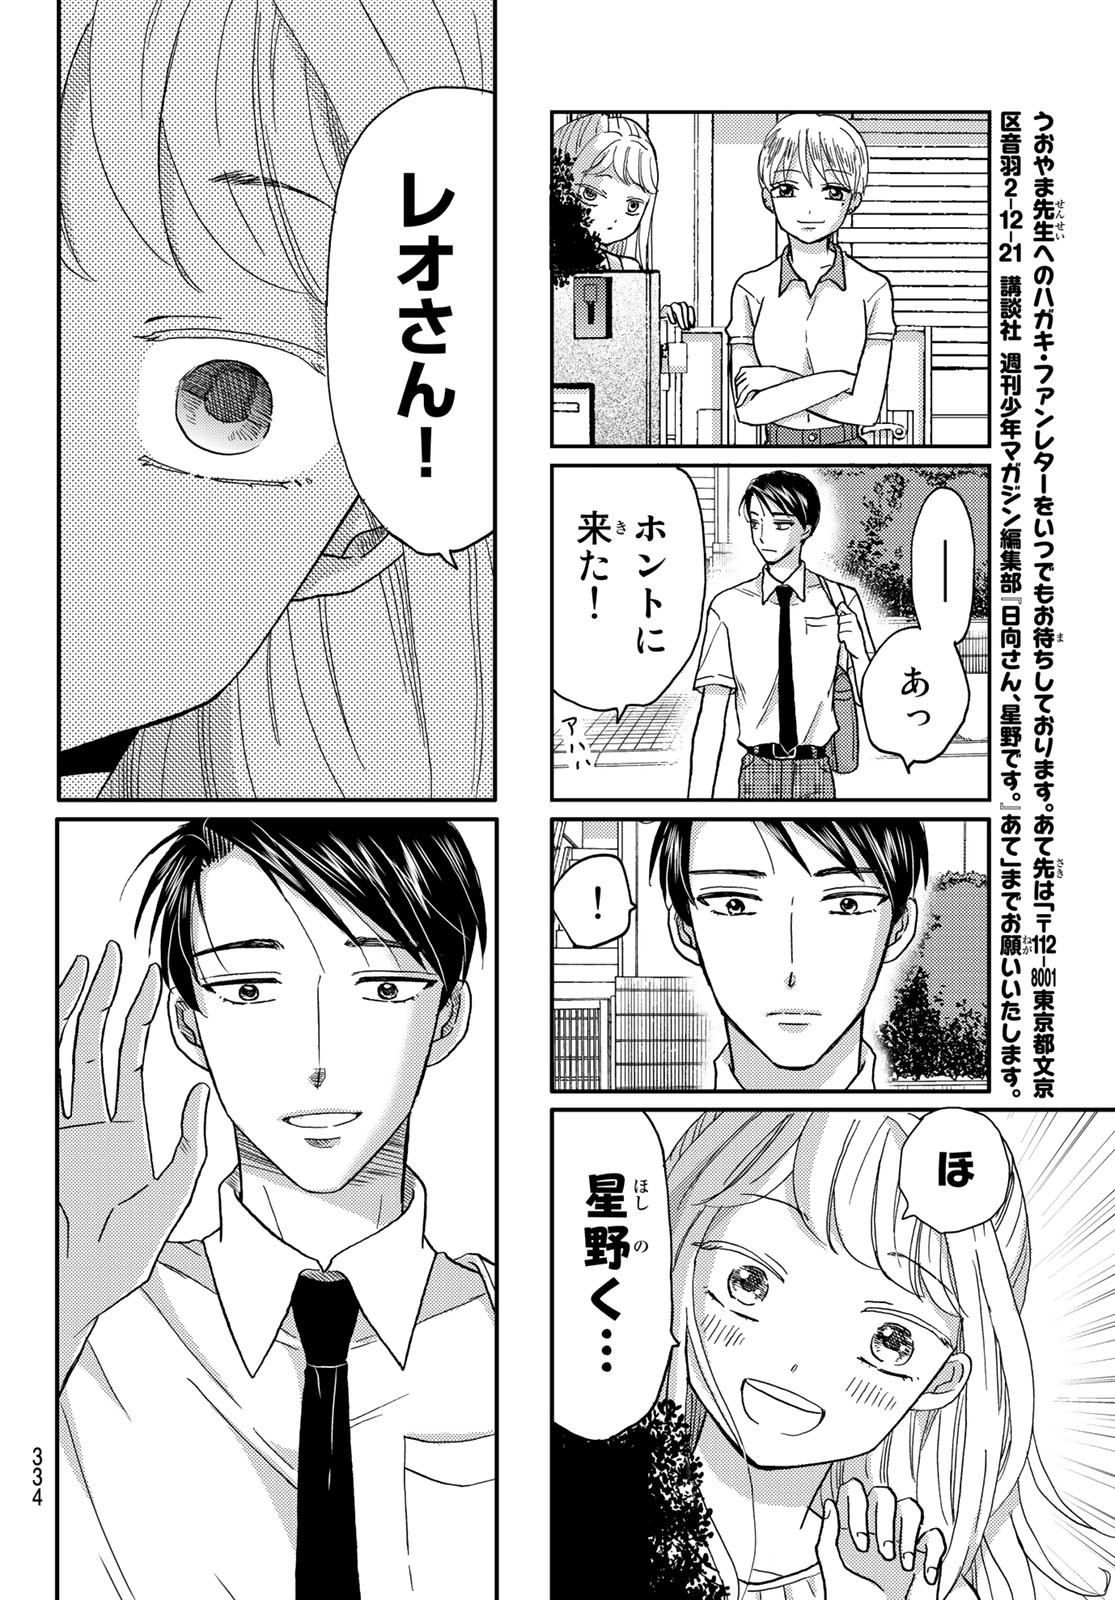 Hinata-san, Hoshino desu. - Chapter 039 - Page 8